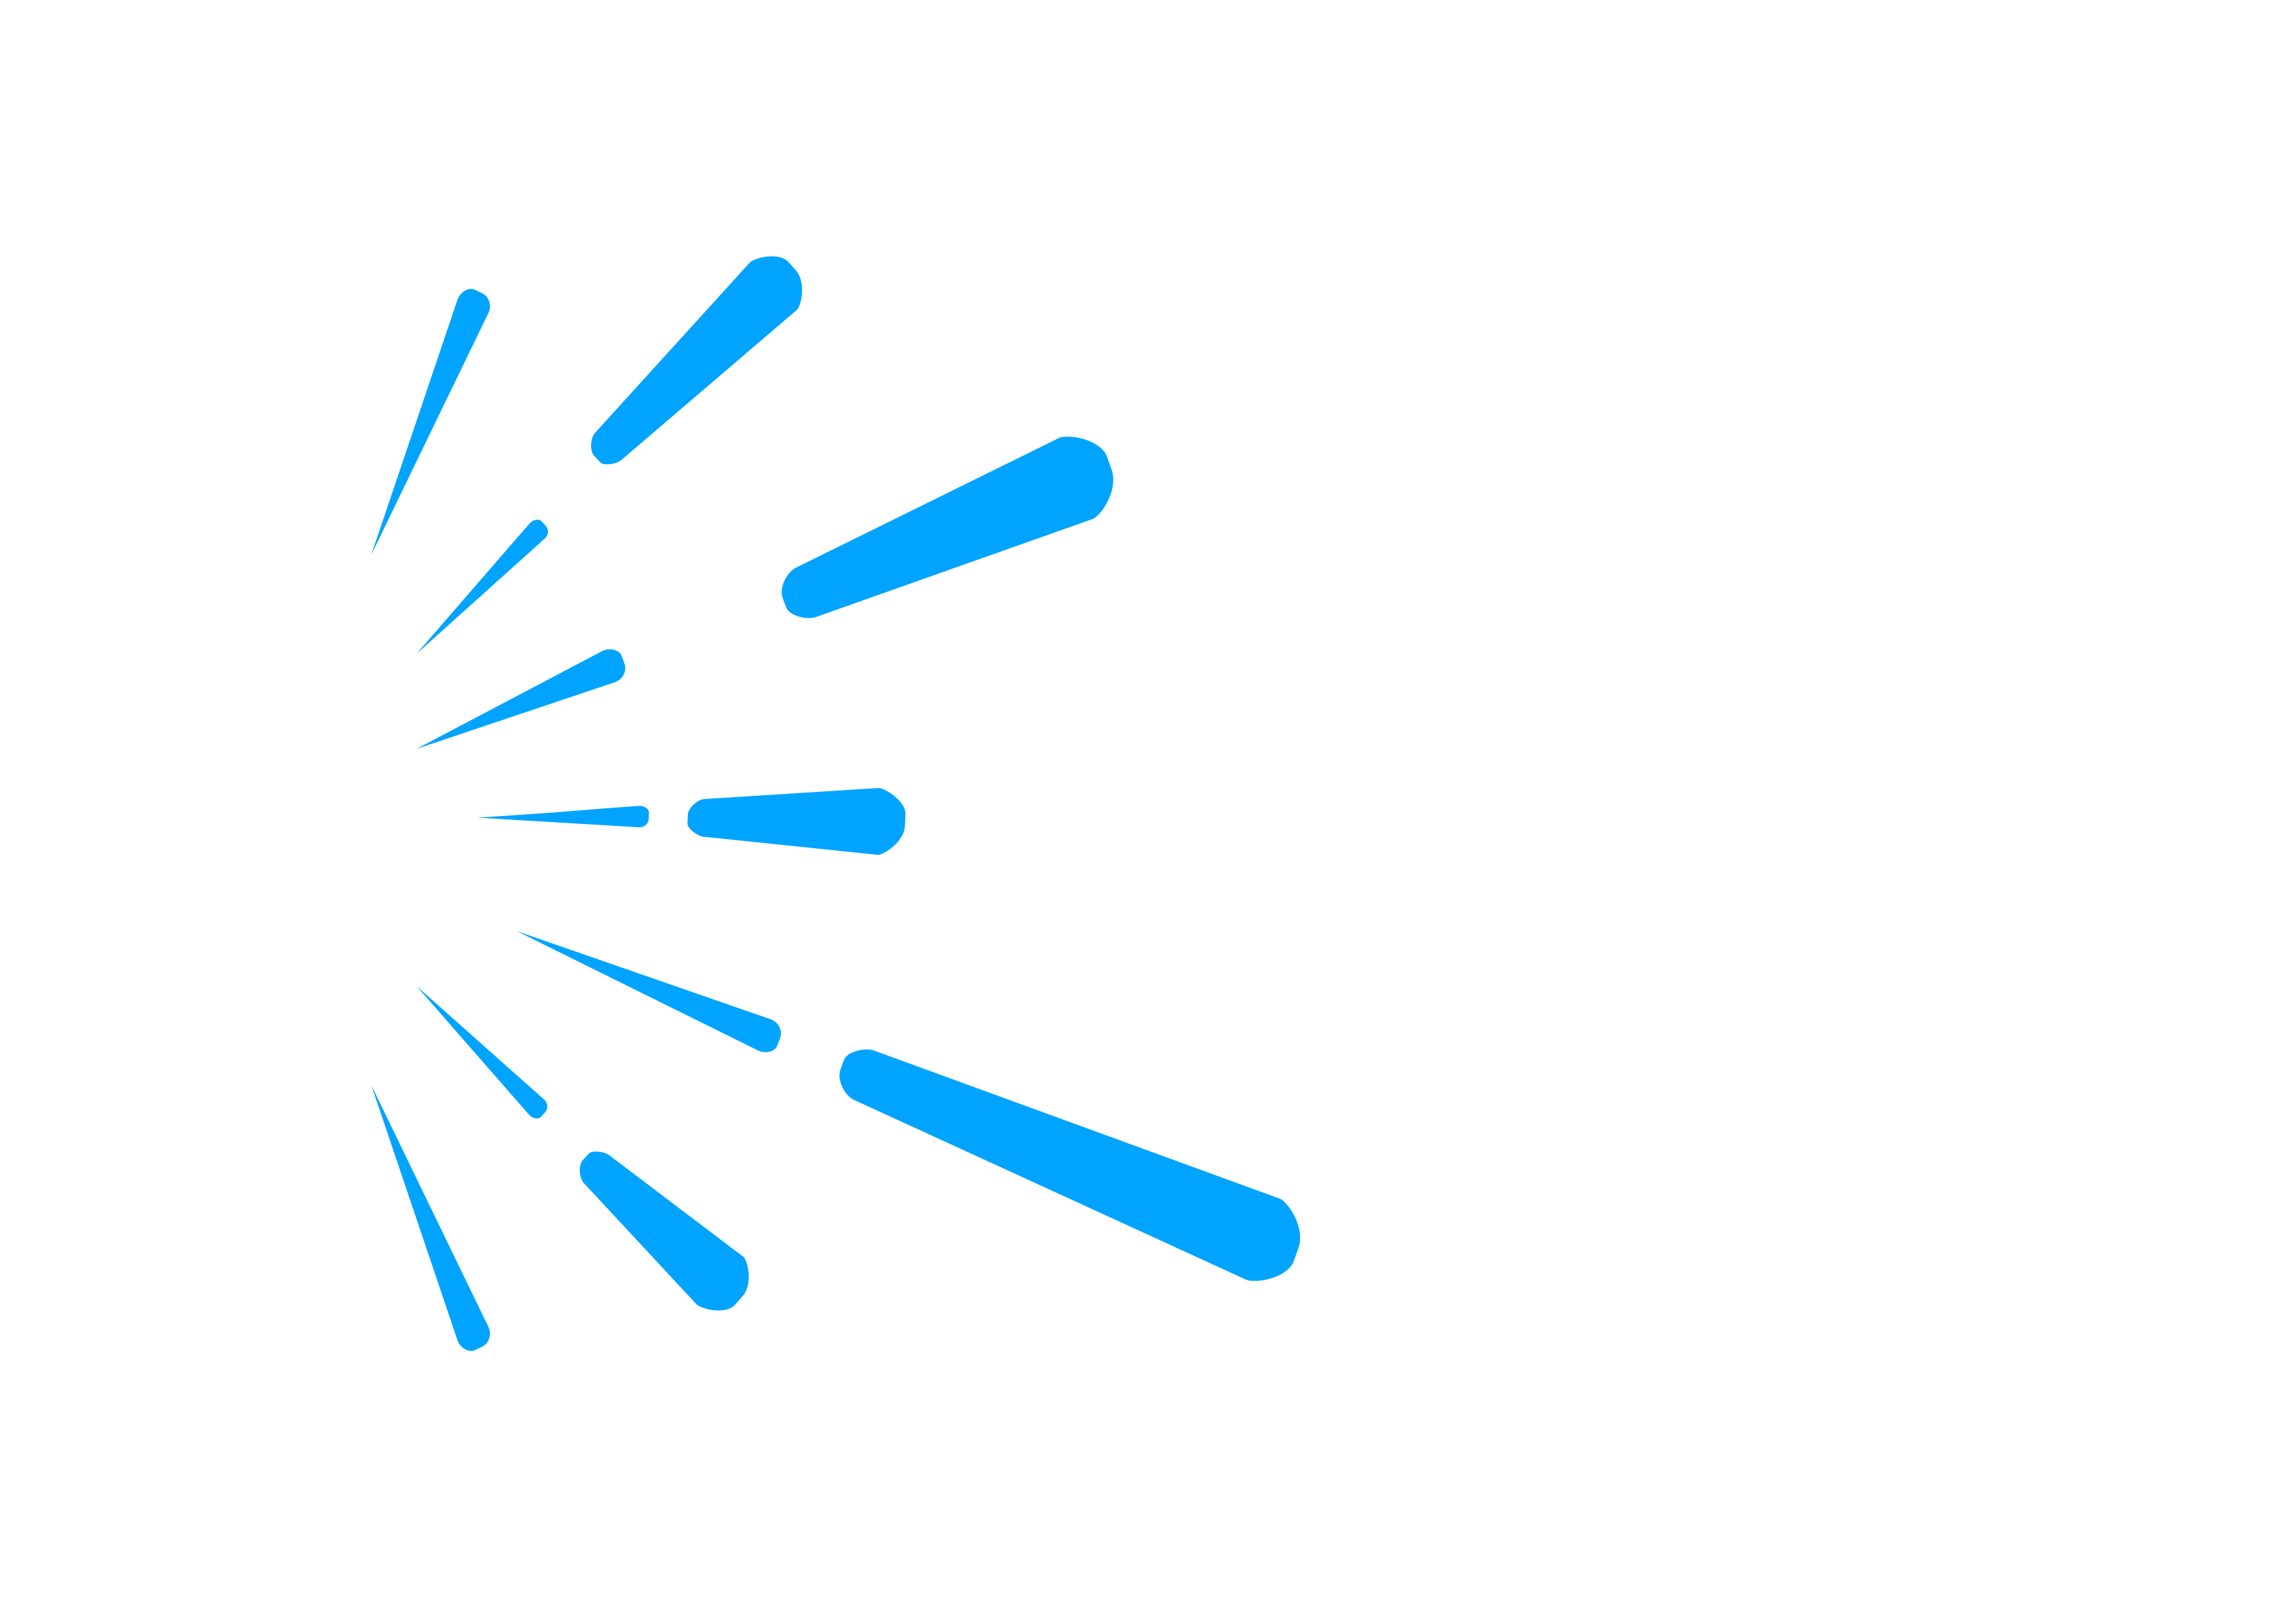 RL Licht GmbH